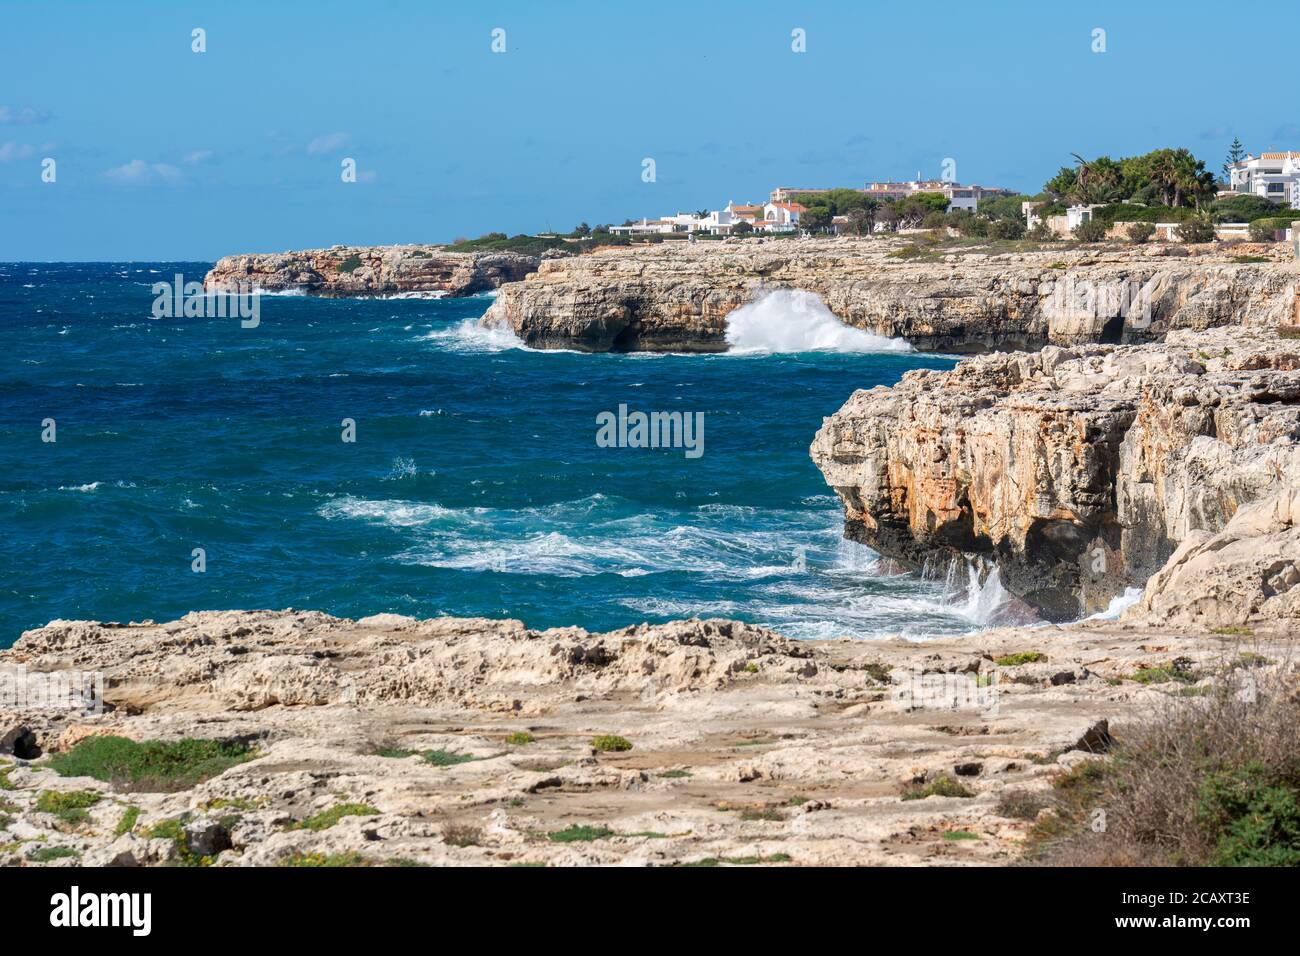 Costa rocosa del oeste de Menorca, puerto de Ciutadella. Menorca, España Foto de stock